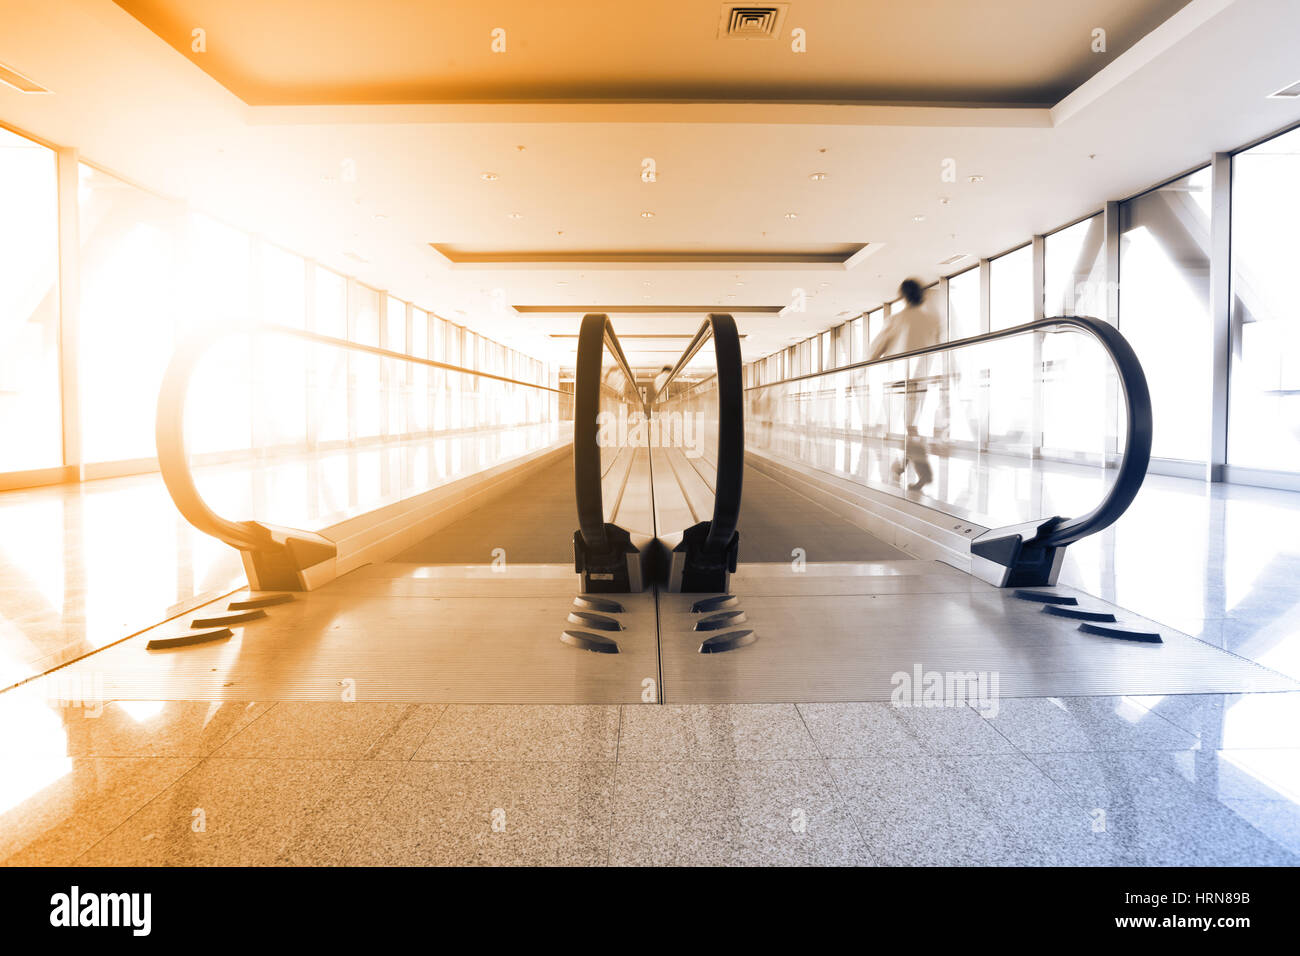 Perspektive der Korridor und Rolltreppe im Flughafen. Getönten Bild Stockfoto